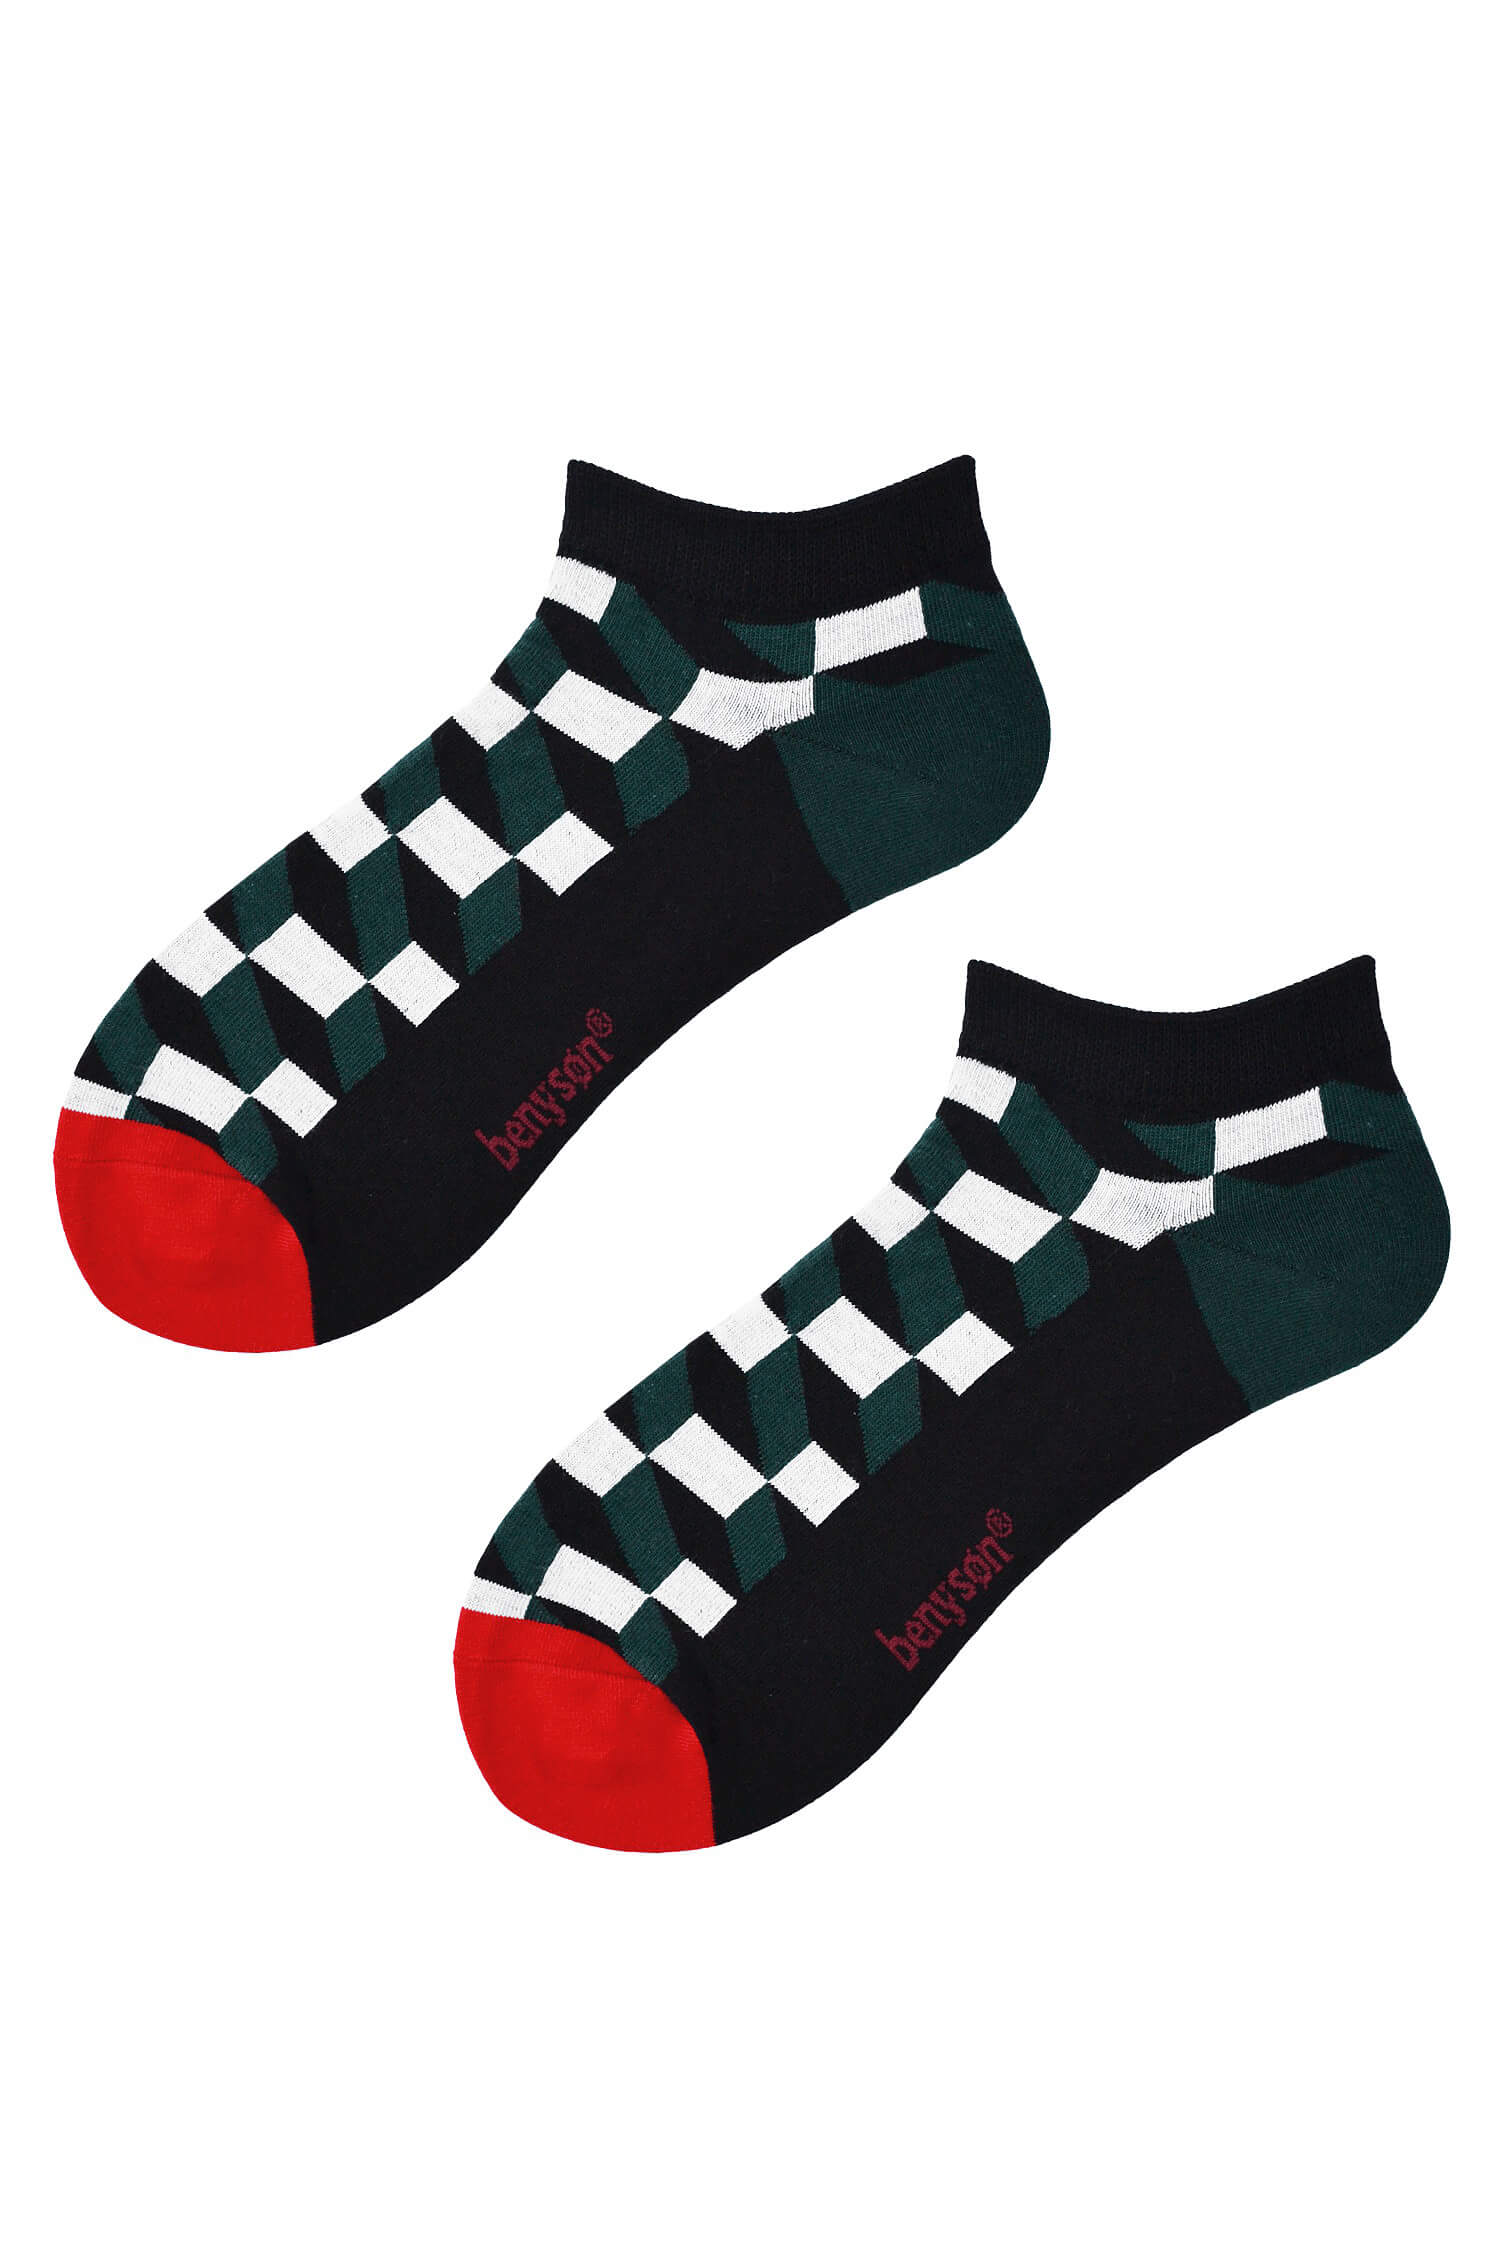 Pánské kotníčkové ponožky bavlna 5609 42-46 vícebarevná